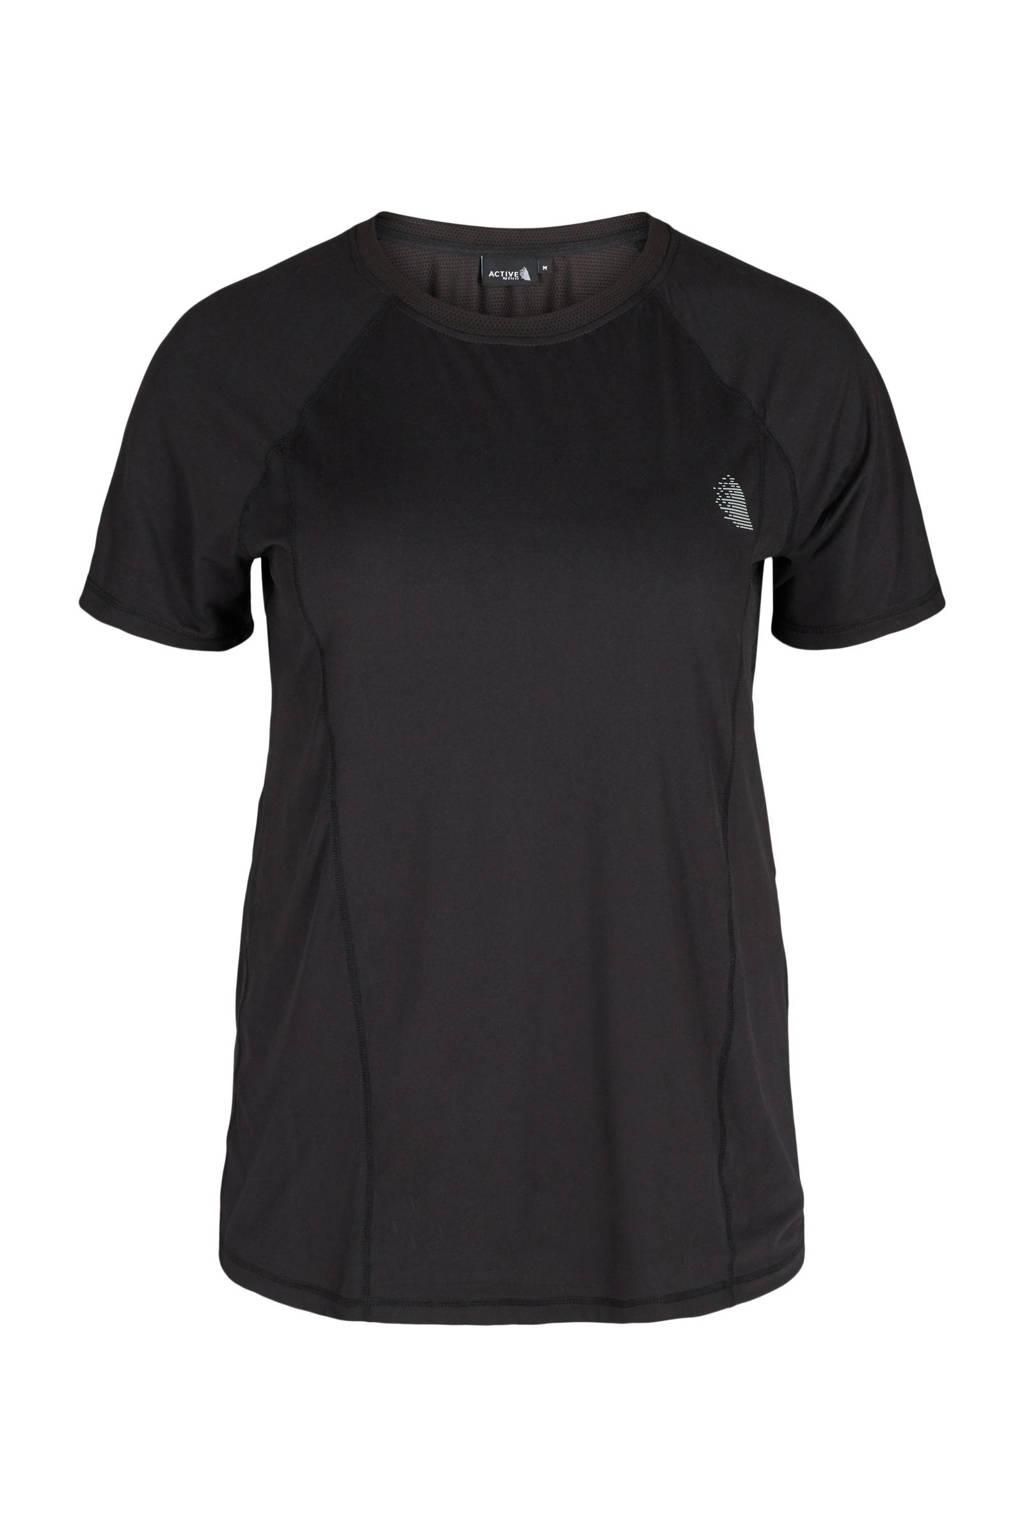 ACTIVE By Zizzi Plus Size sport T-shirt zwart, Zwart